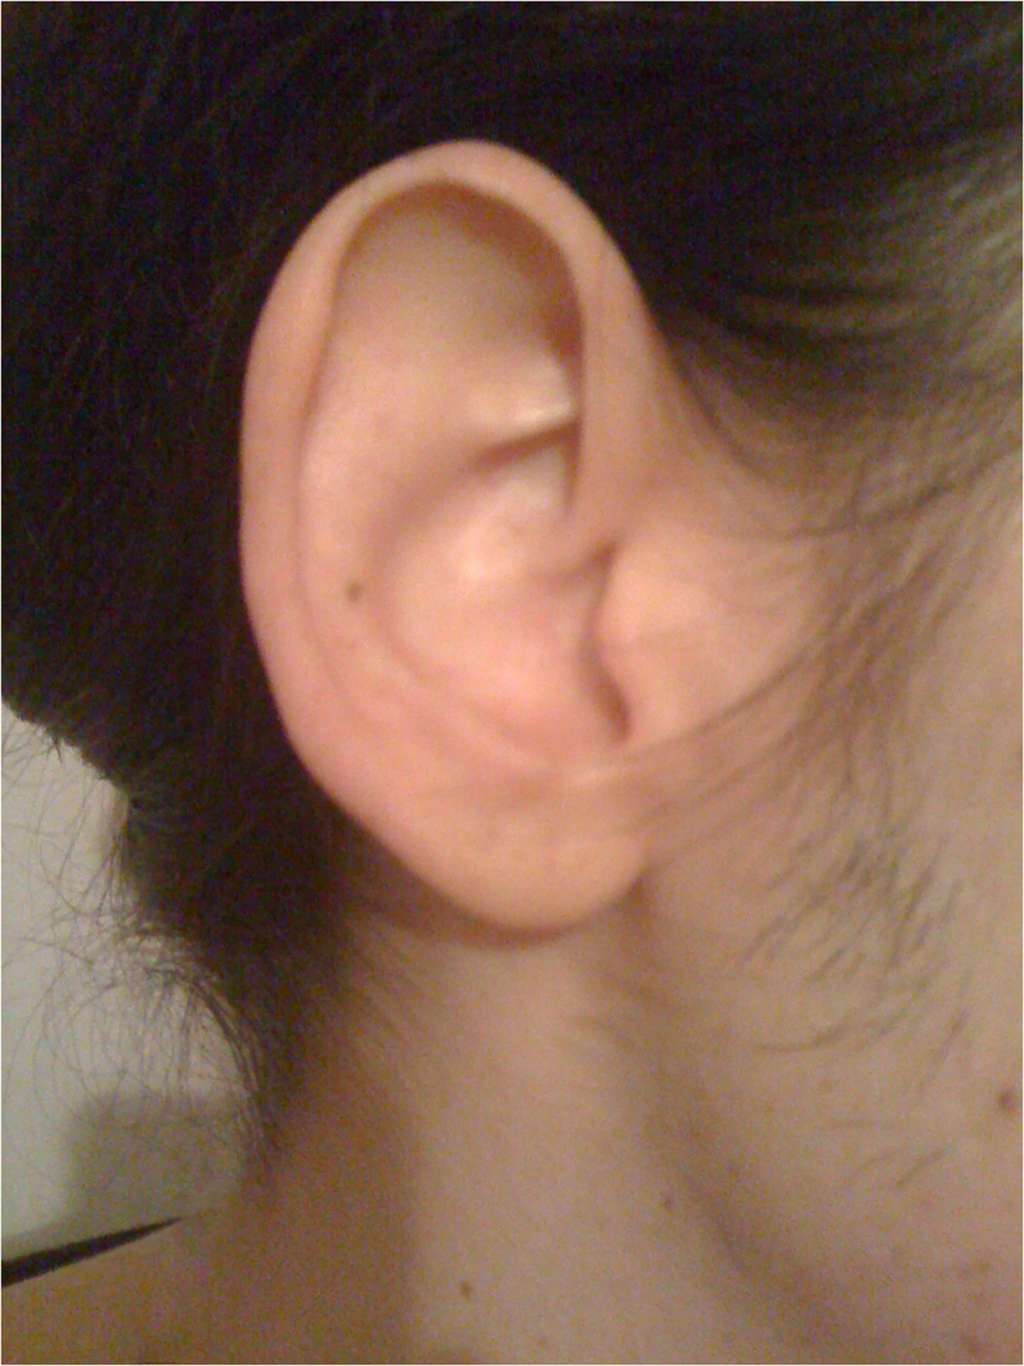 L'oreille de la patiente dans son état normal. © Chan, C.C. et Ghosh, J Med Case Reports 